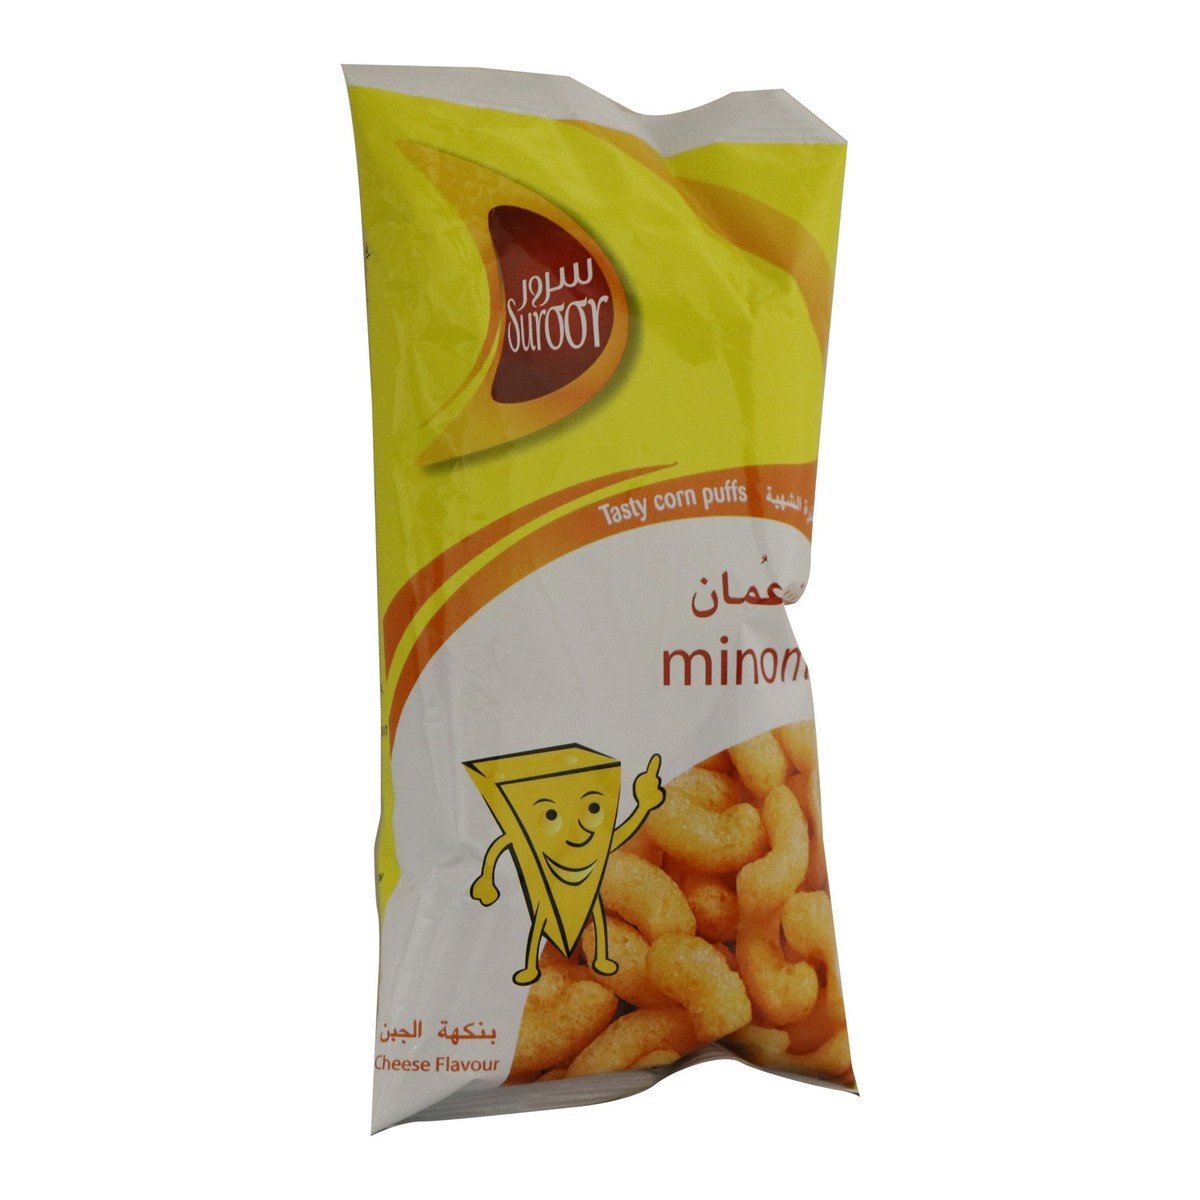 Suroor Minoman Tasty Corn Puffs Cheese Flavour 12 x 22 g